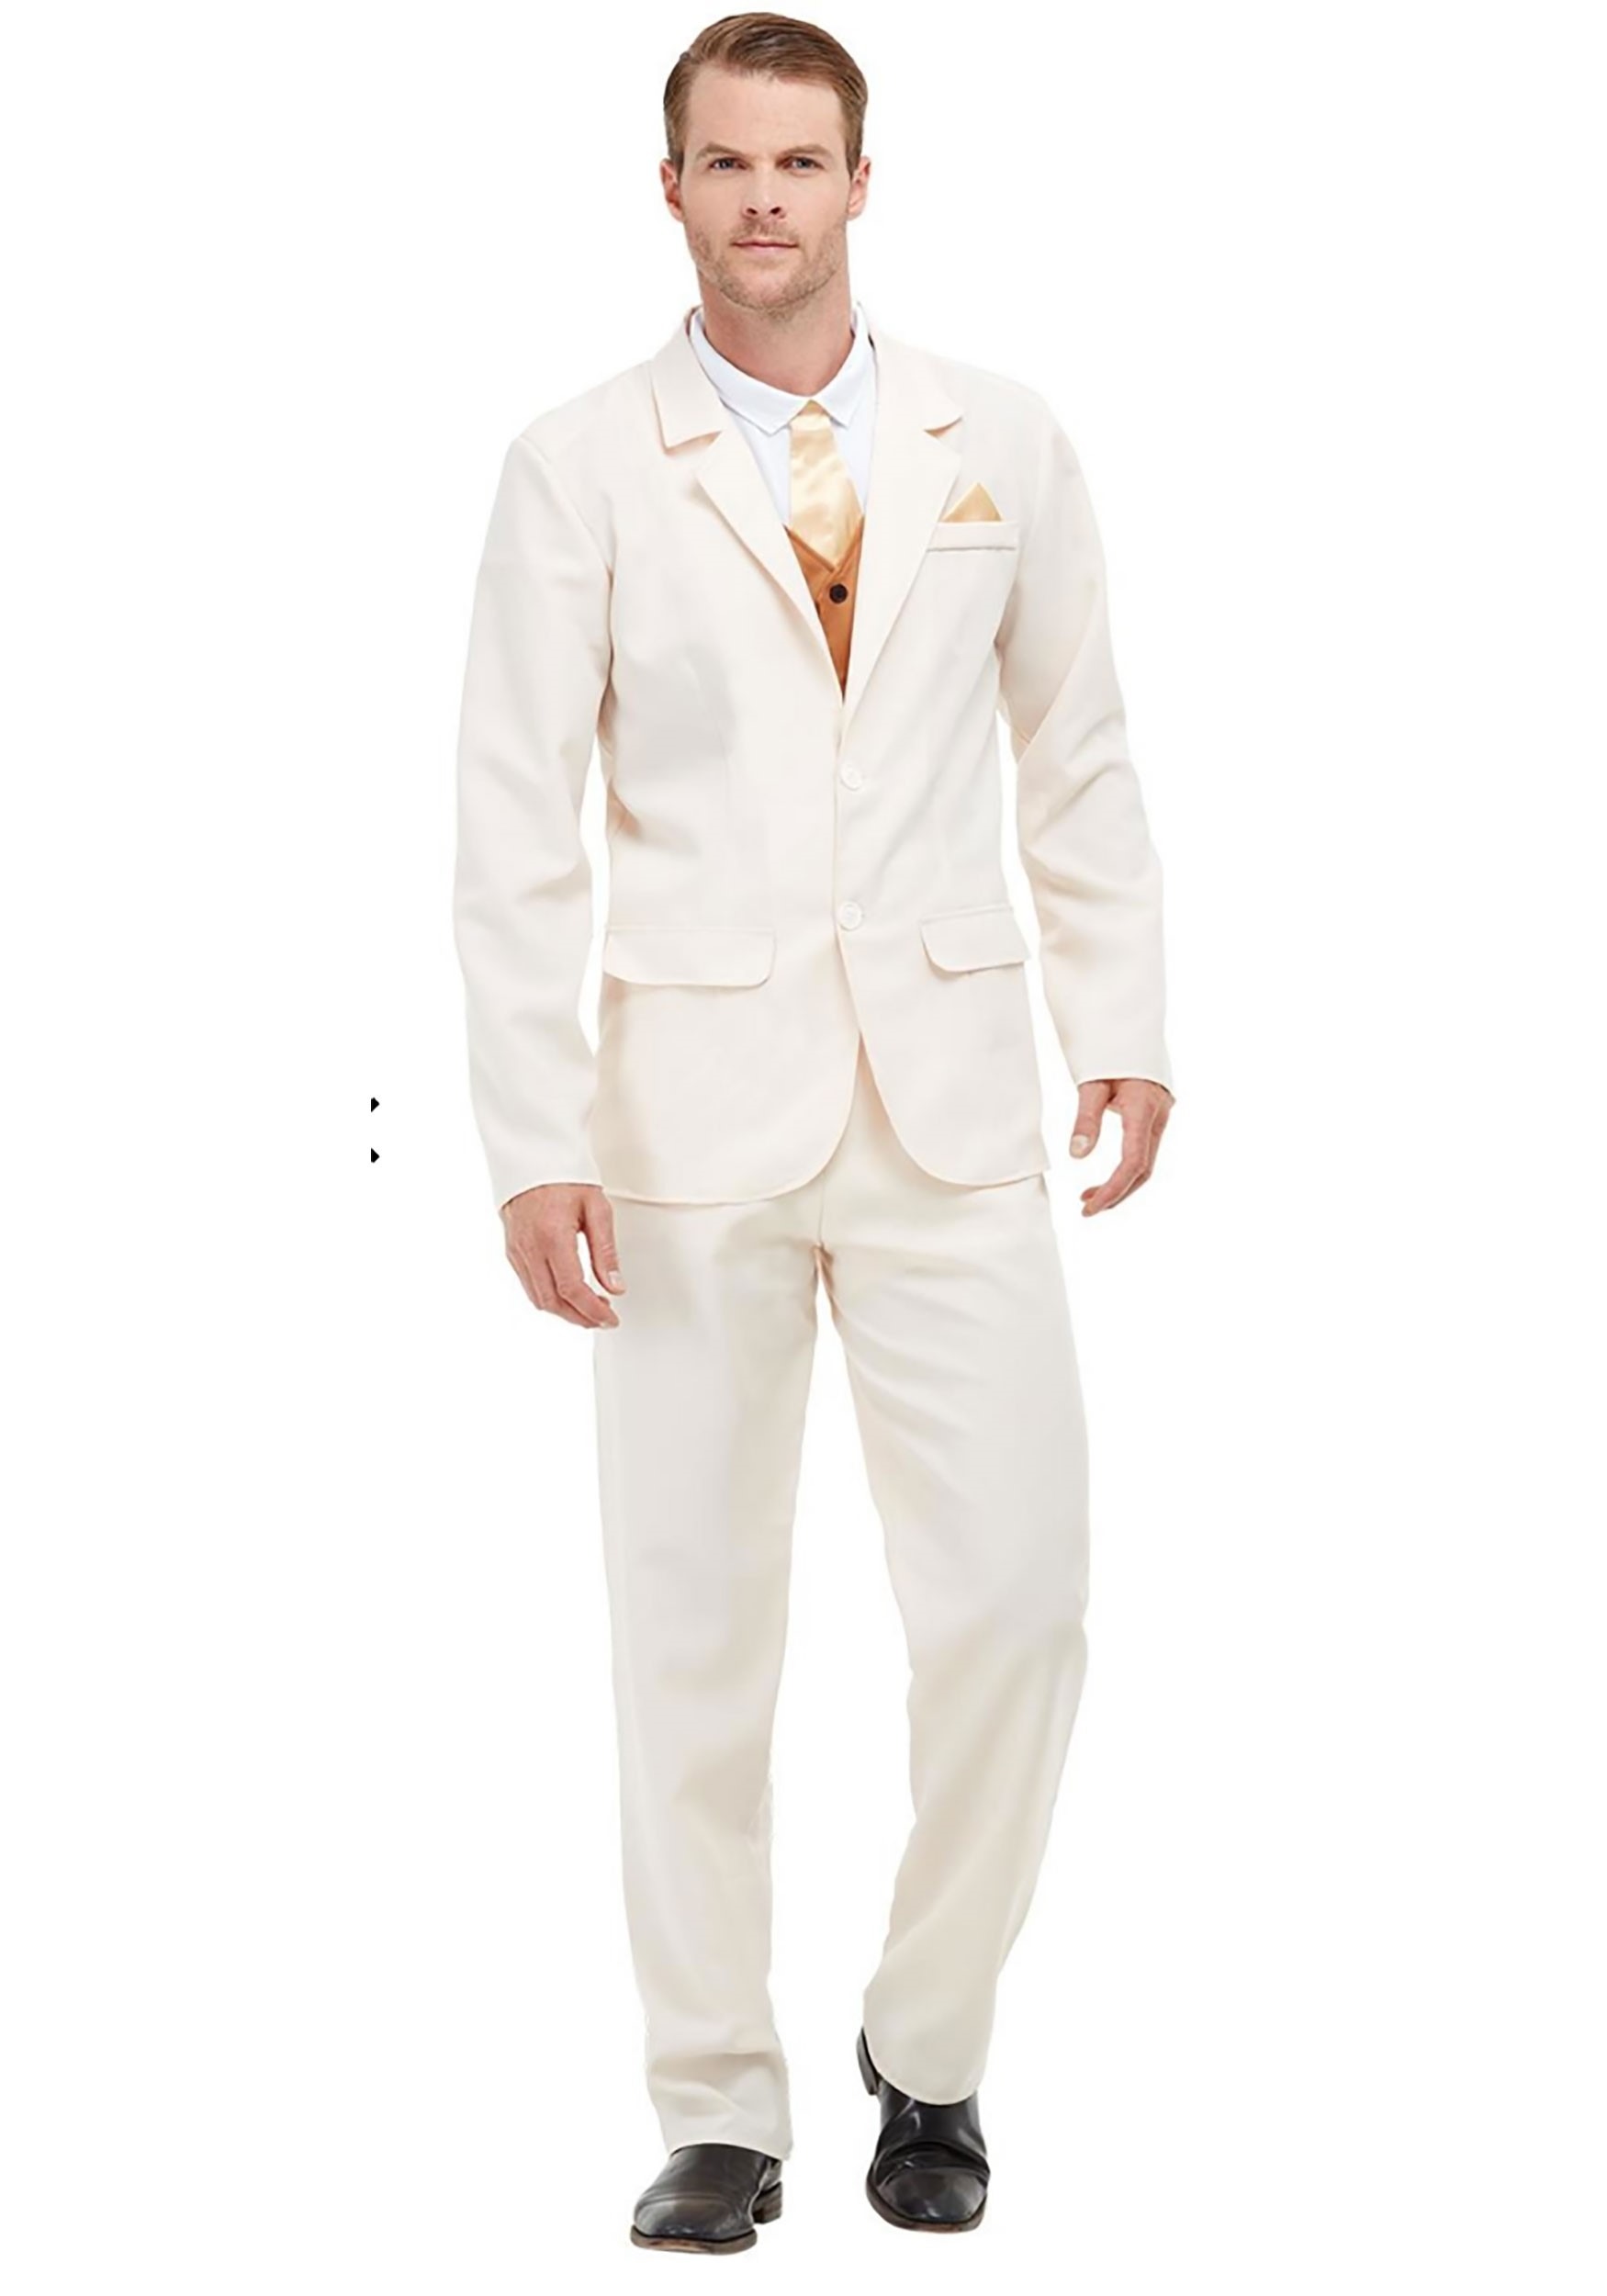 Producción moderadamente ensalada Roaring 20s White Costume for Adults